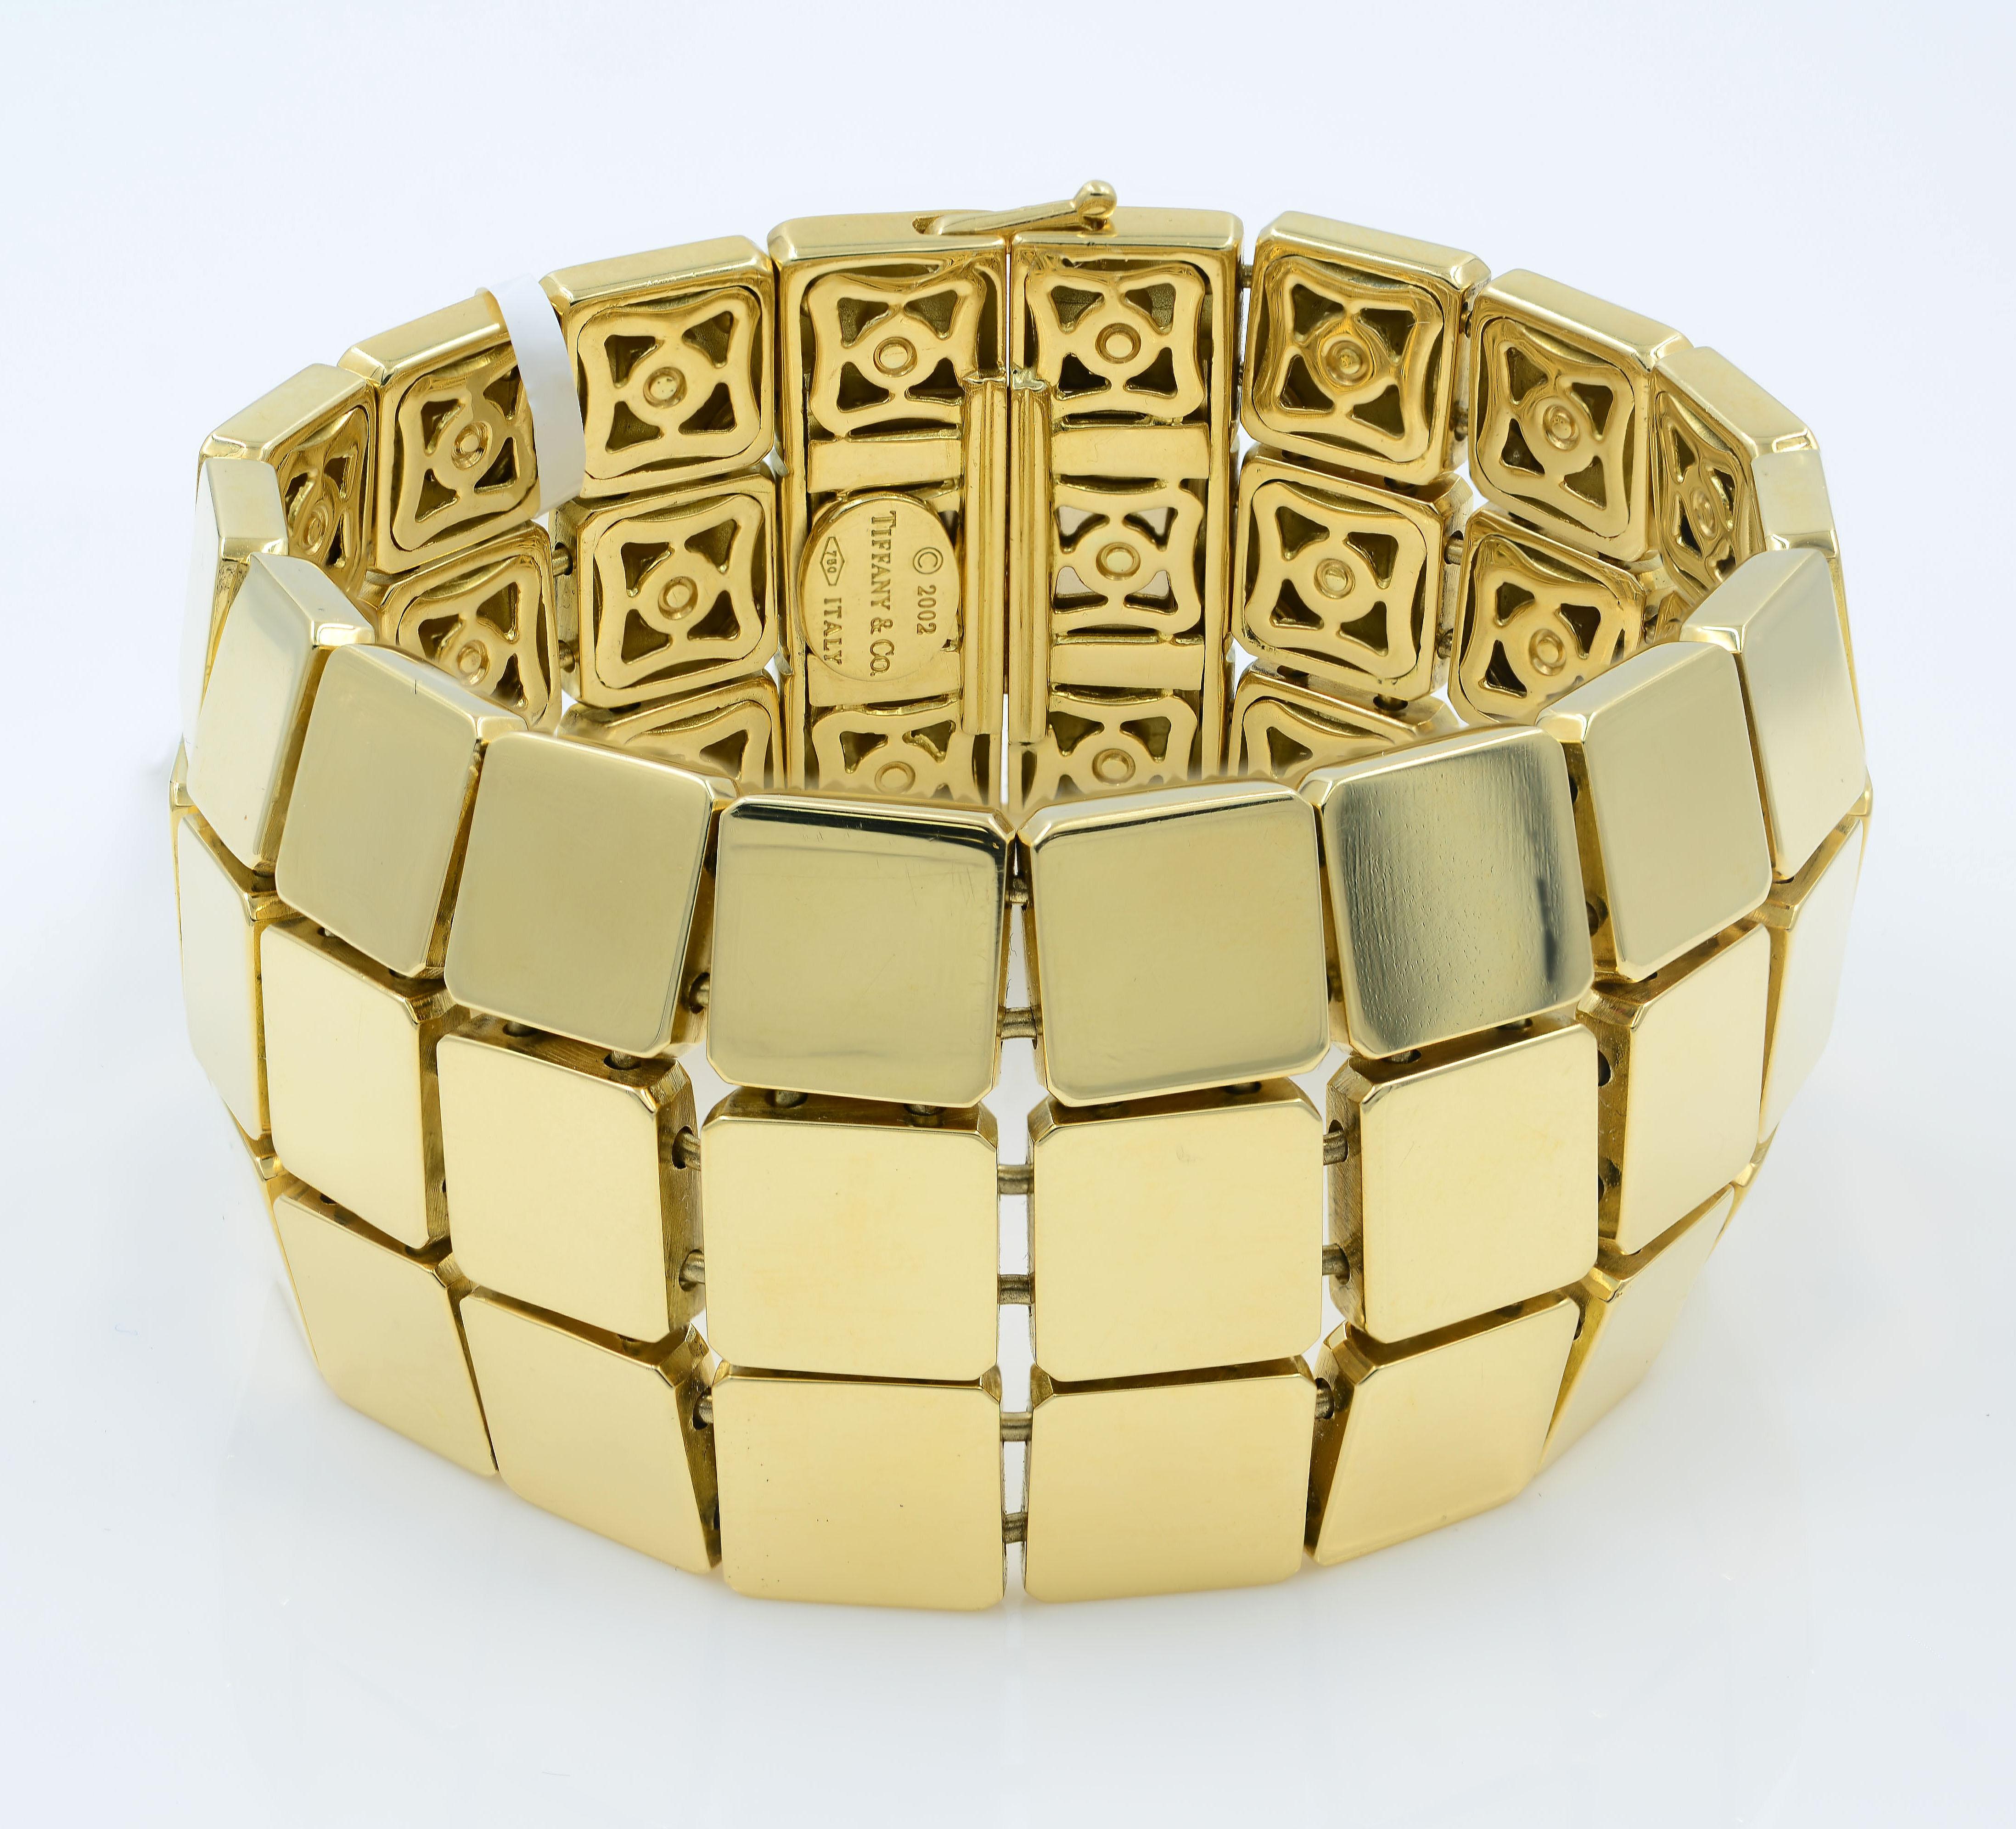 Tiffany Bracelet 2002 Cube 18K Yellow Gold
Tiffany & Co 18k yellow gold three row bracelet - 7 1/8